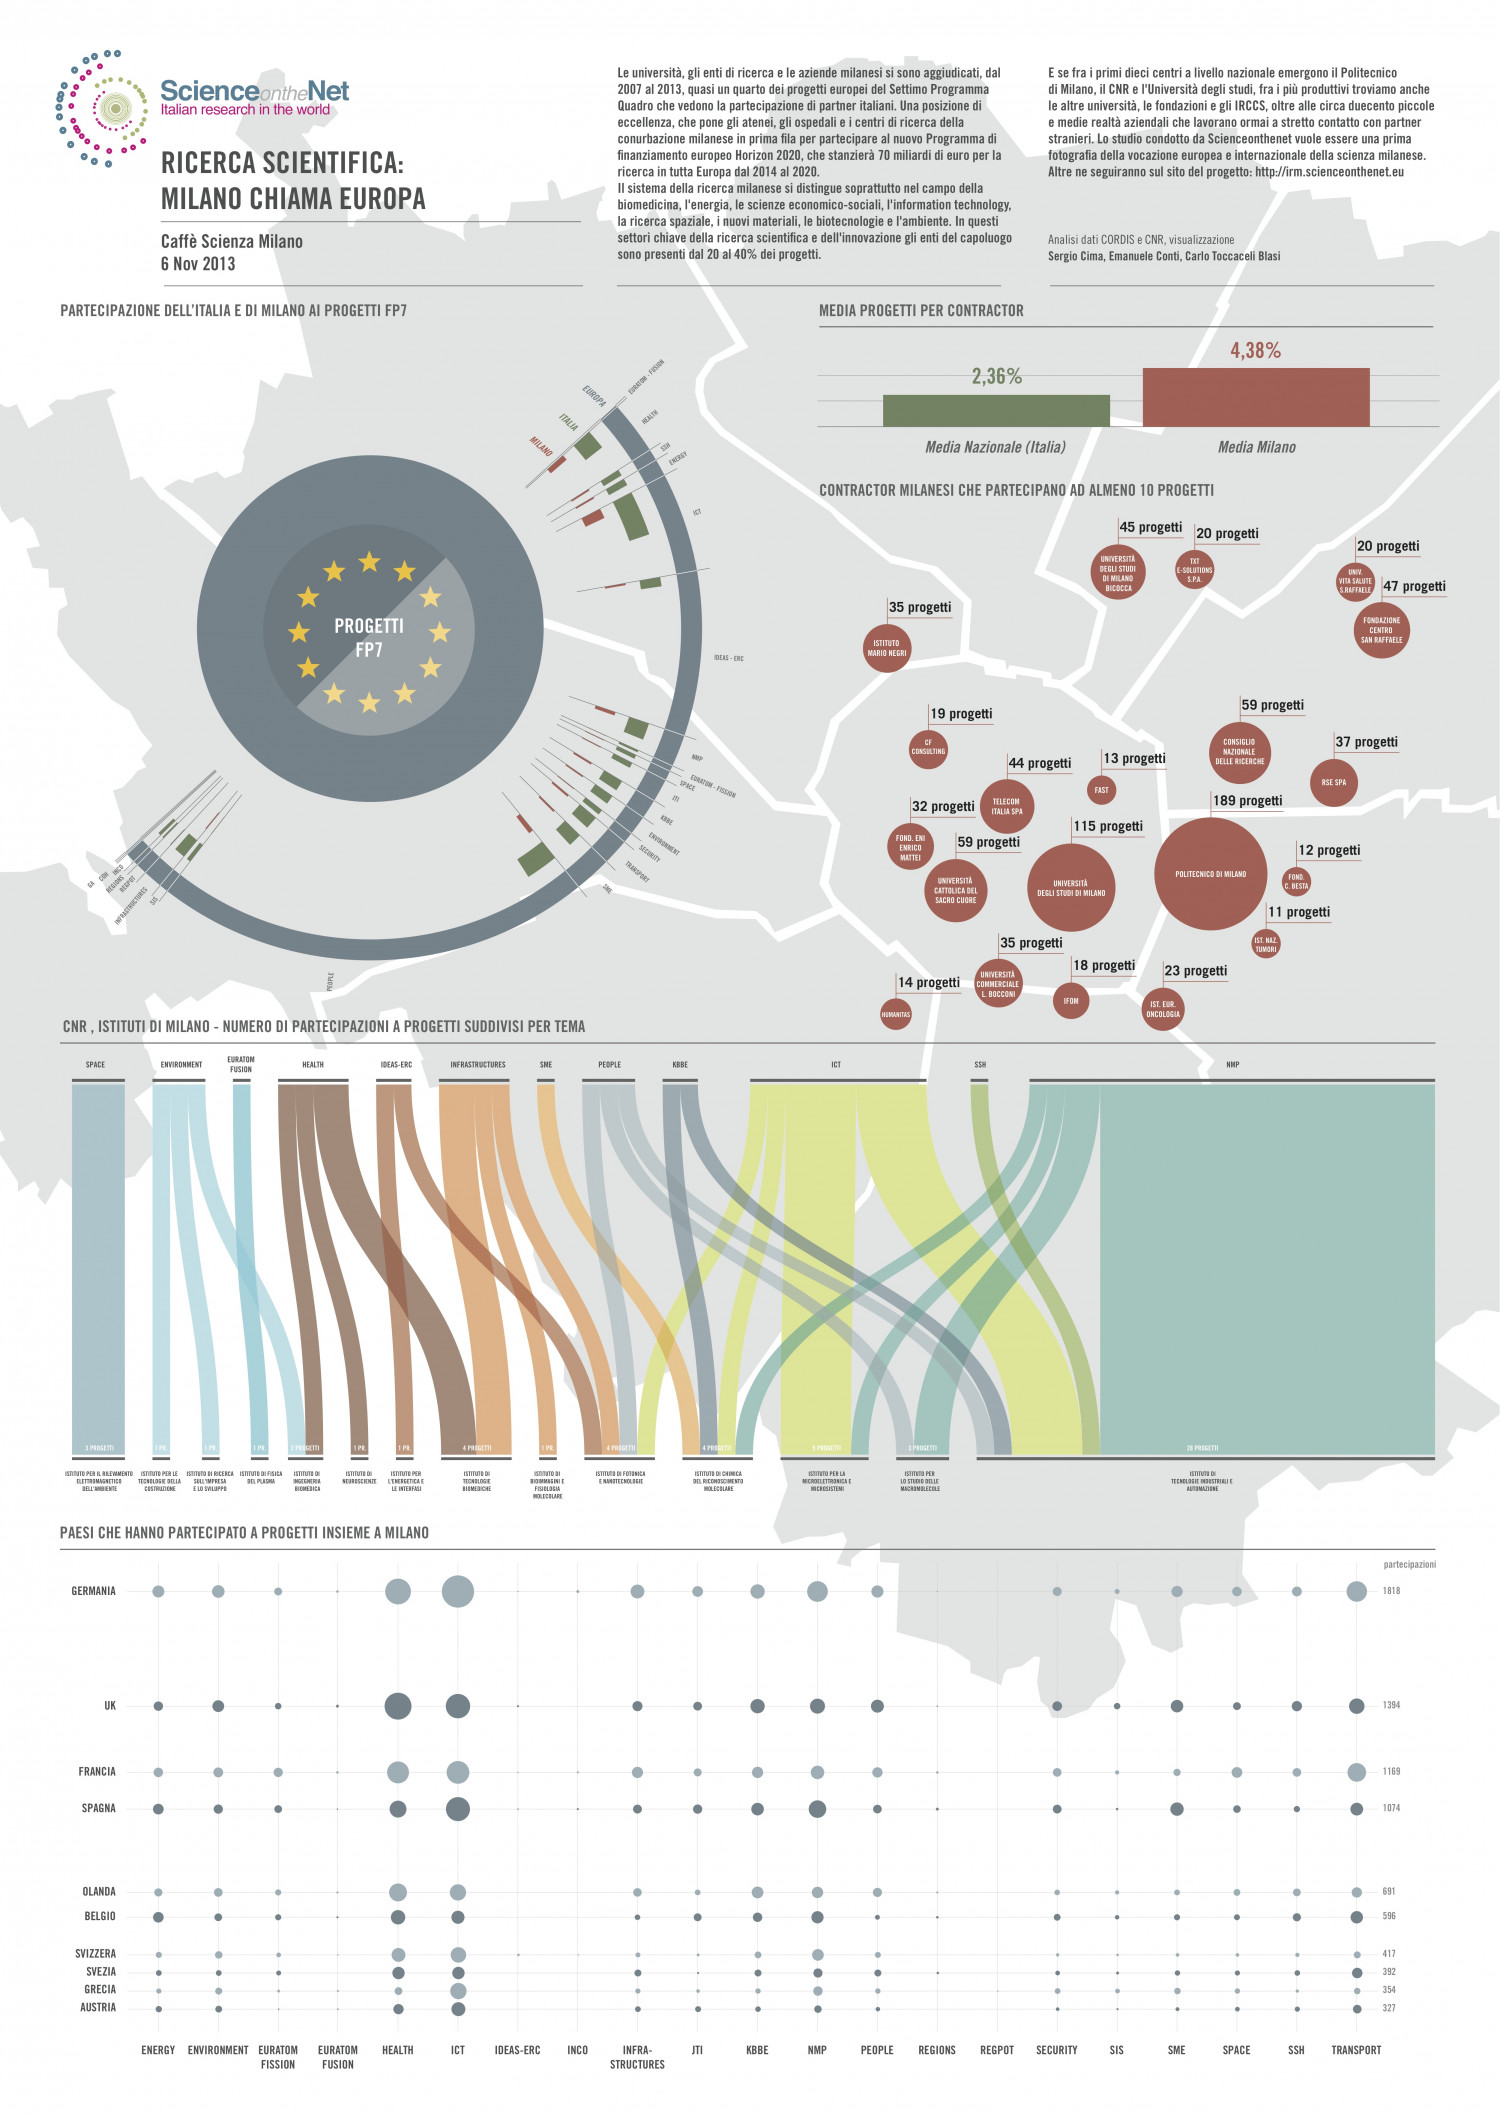 Ricerca scientifica: Milano chiama Europa Infographic